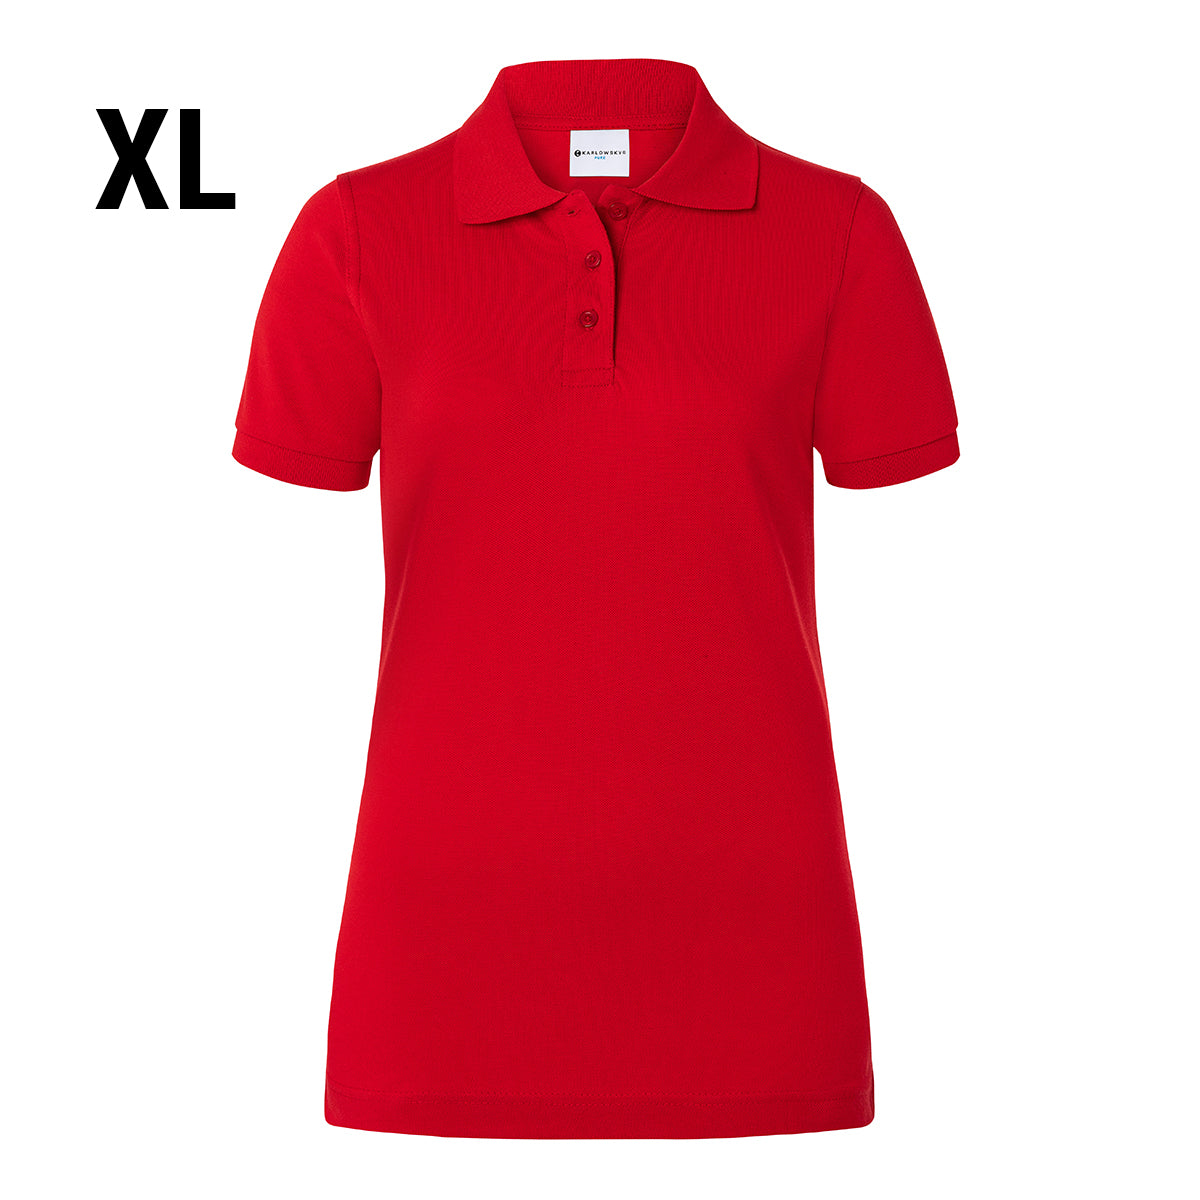 Karlowsky - Arbejdsbeklædning Basic Poloshirt til damer - Rød - Størrelse: XL